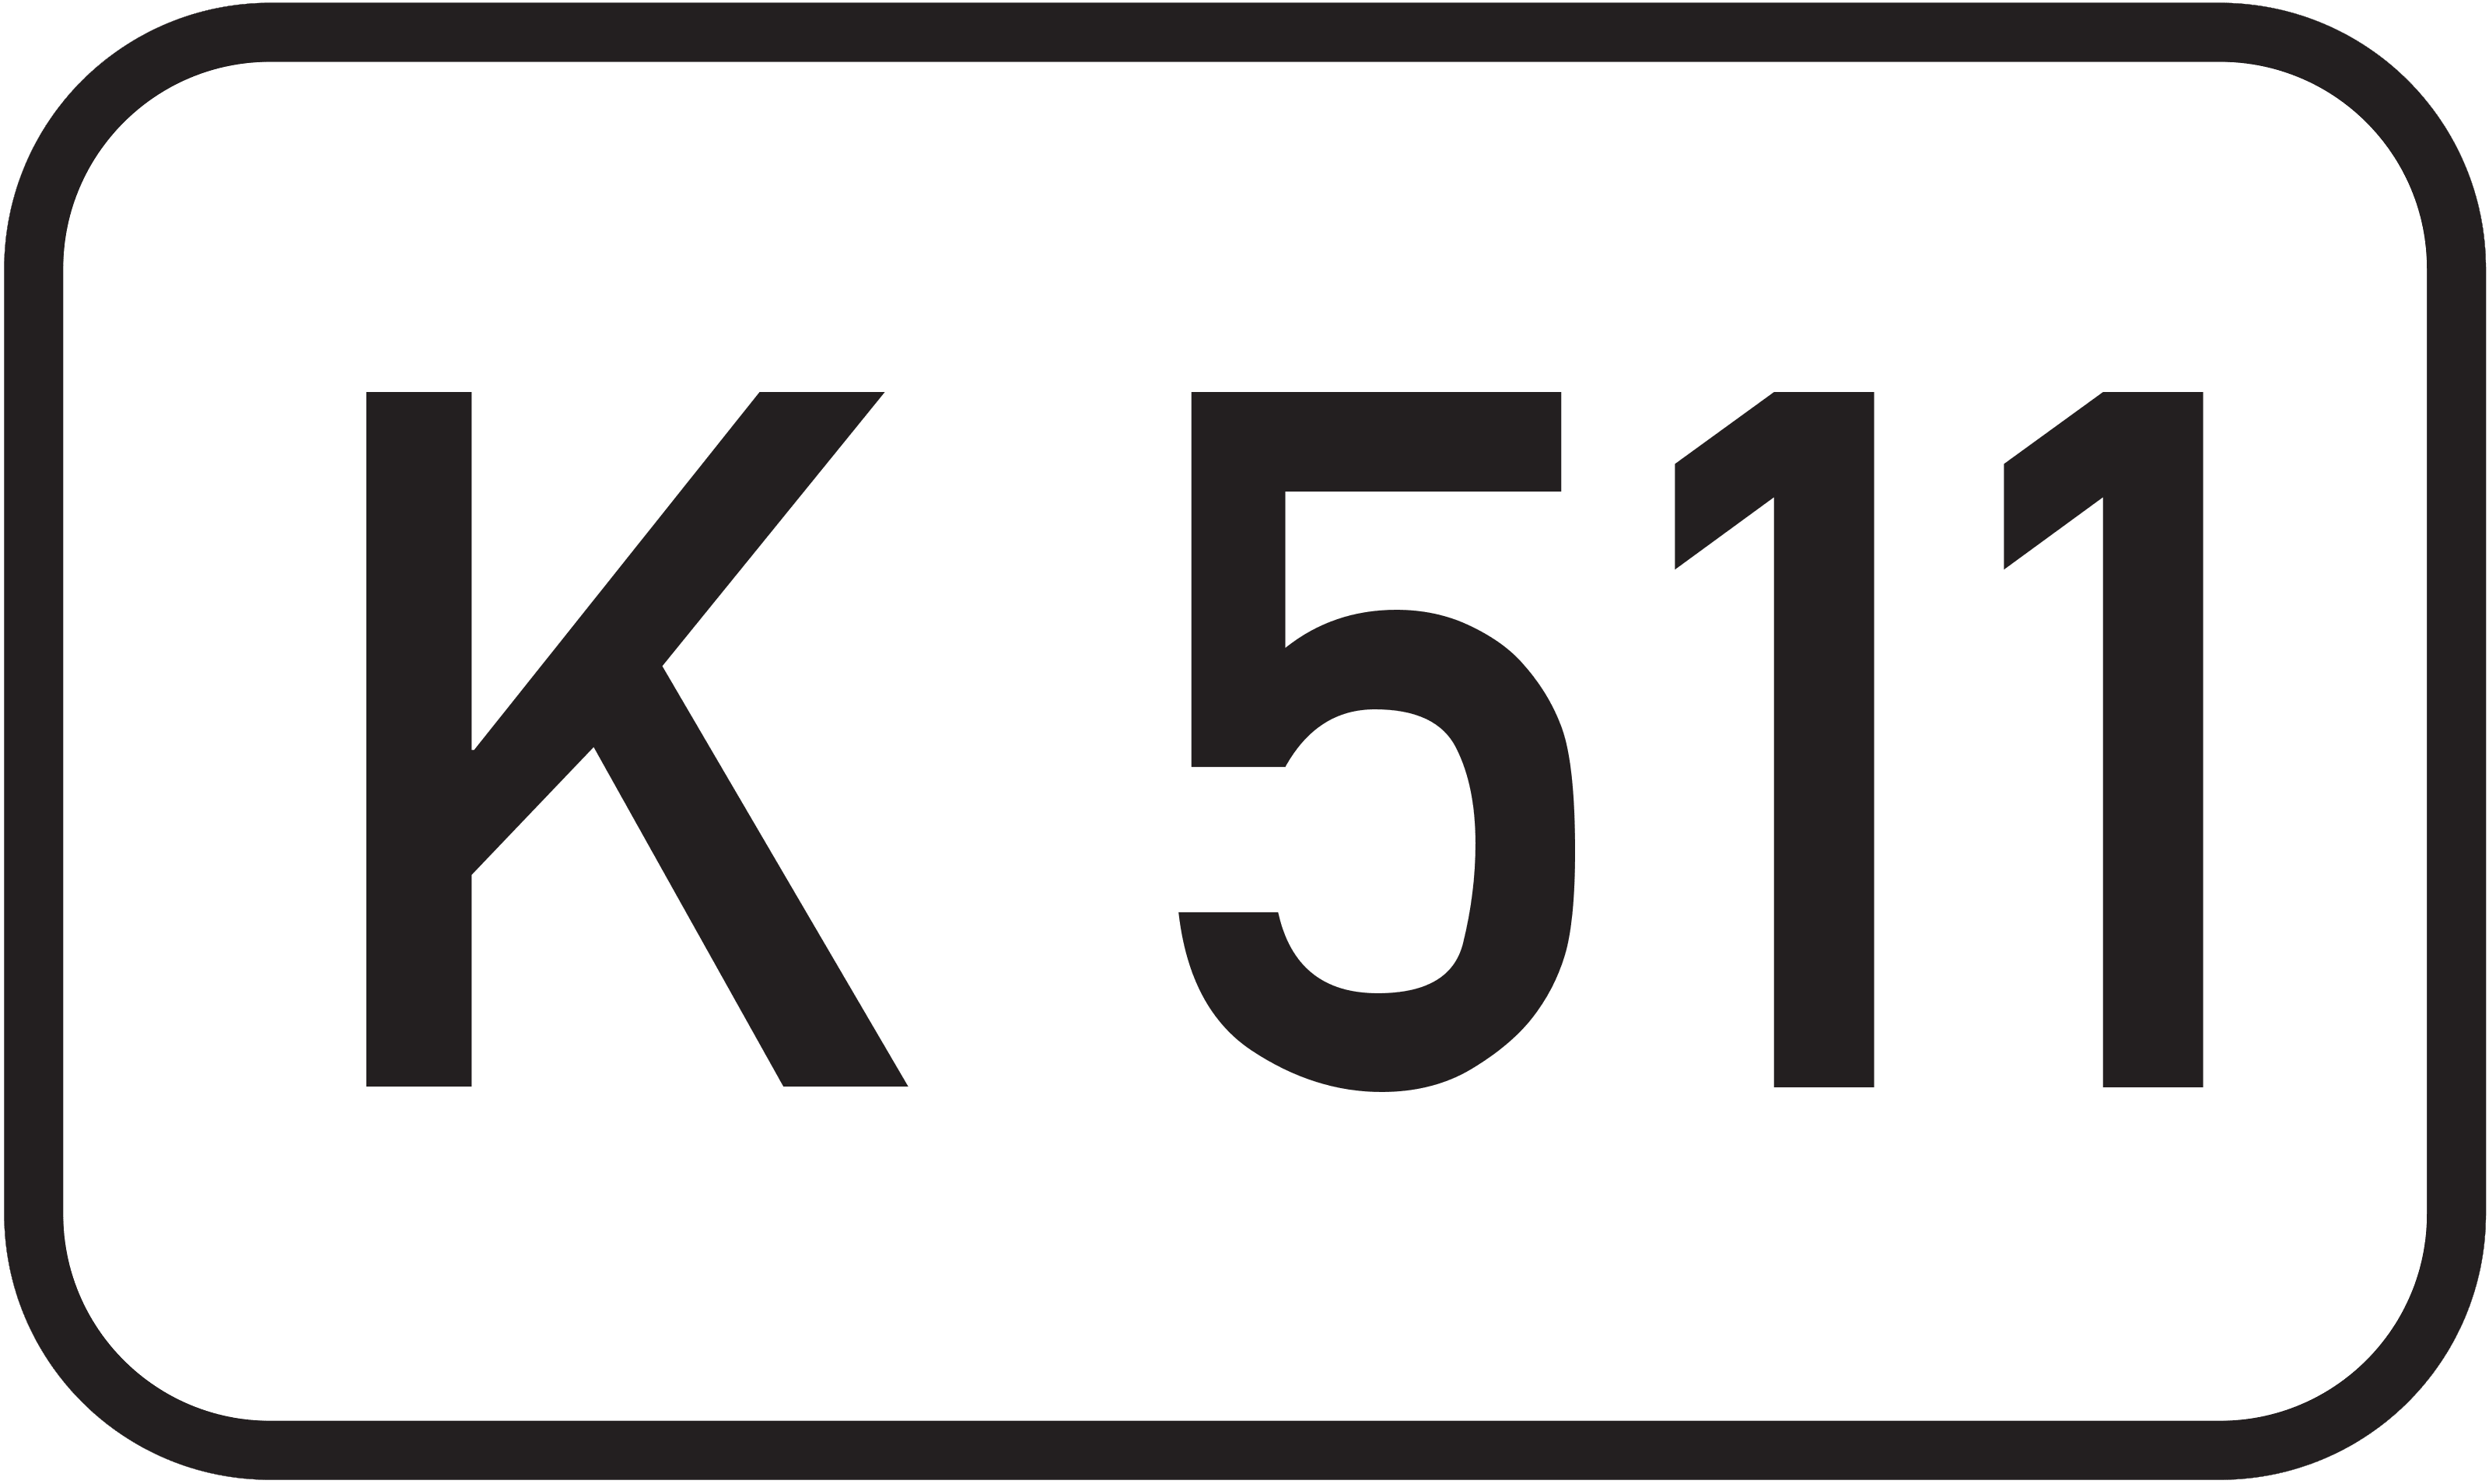 Kreisstraße K 511